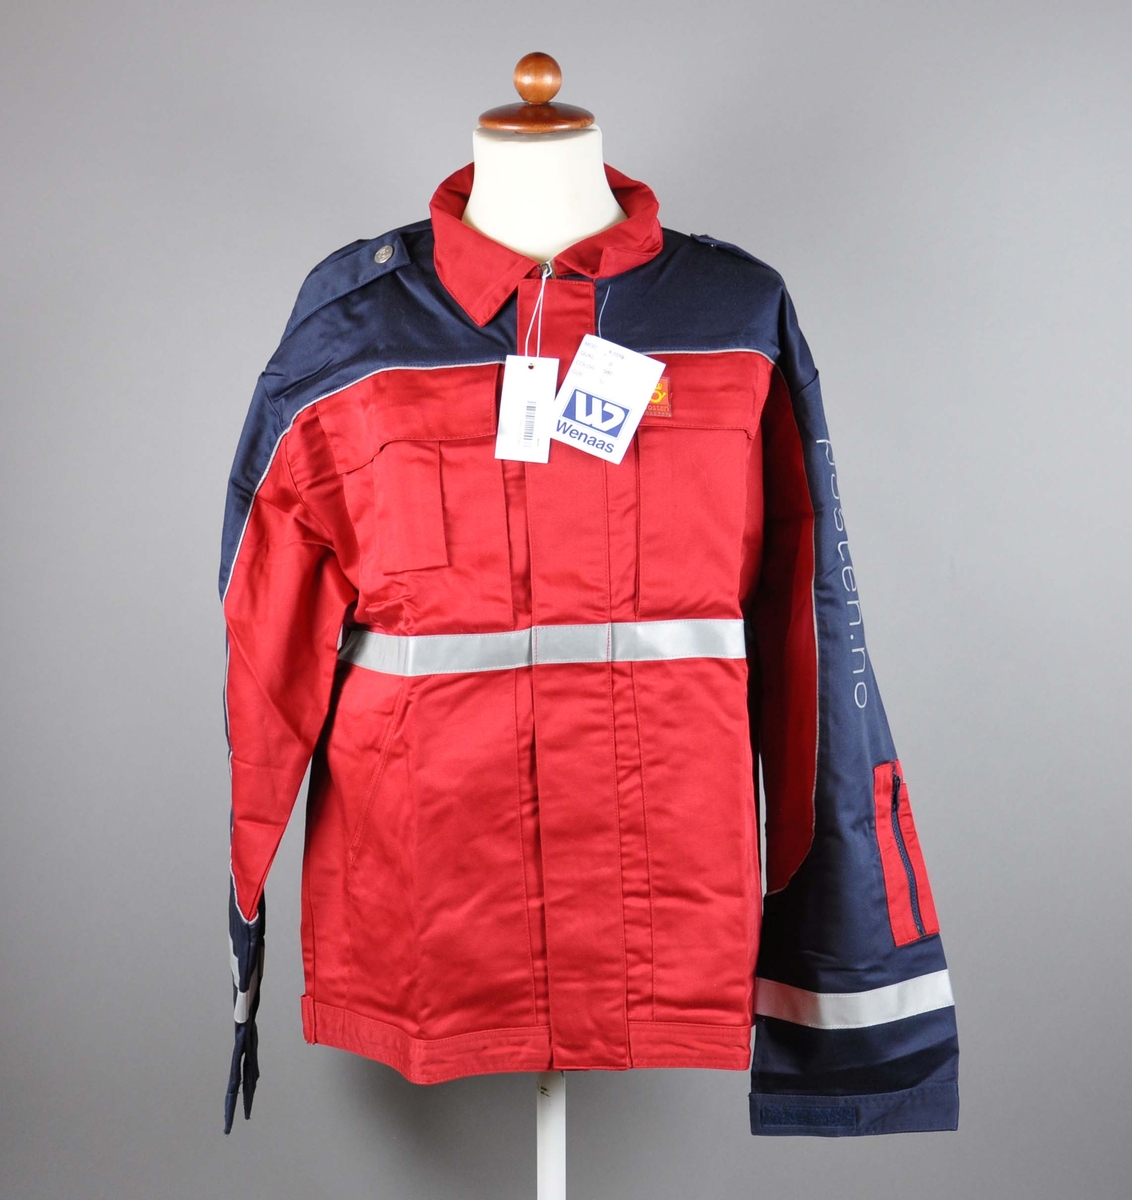 Rød uniformsjakke med postlogo. 4 lommer + lomme for mobil og for penner. Refleksbånd på ermer og liv. Skulderklaffer med knapper med posthorn.

Størrelse 50.